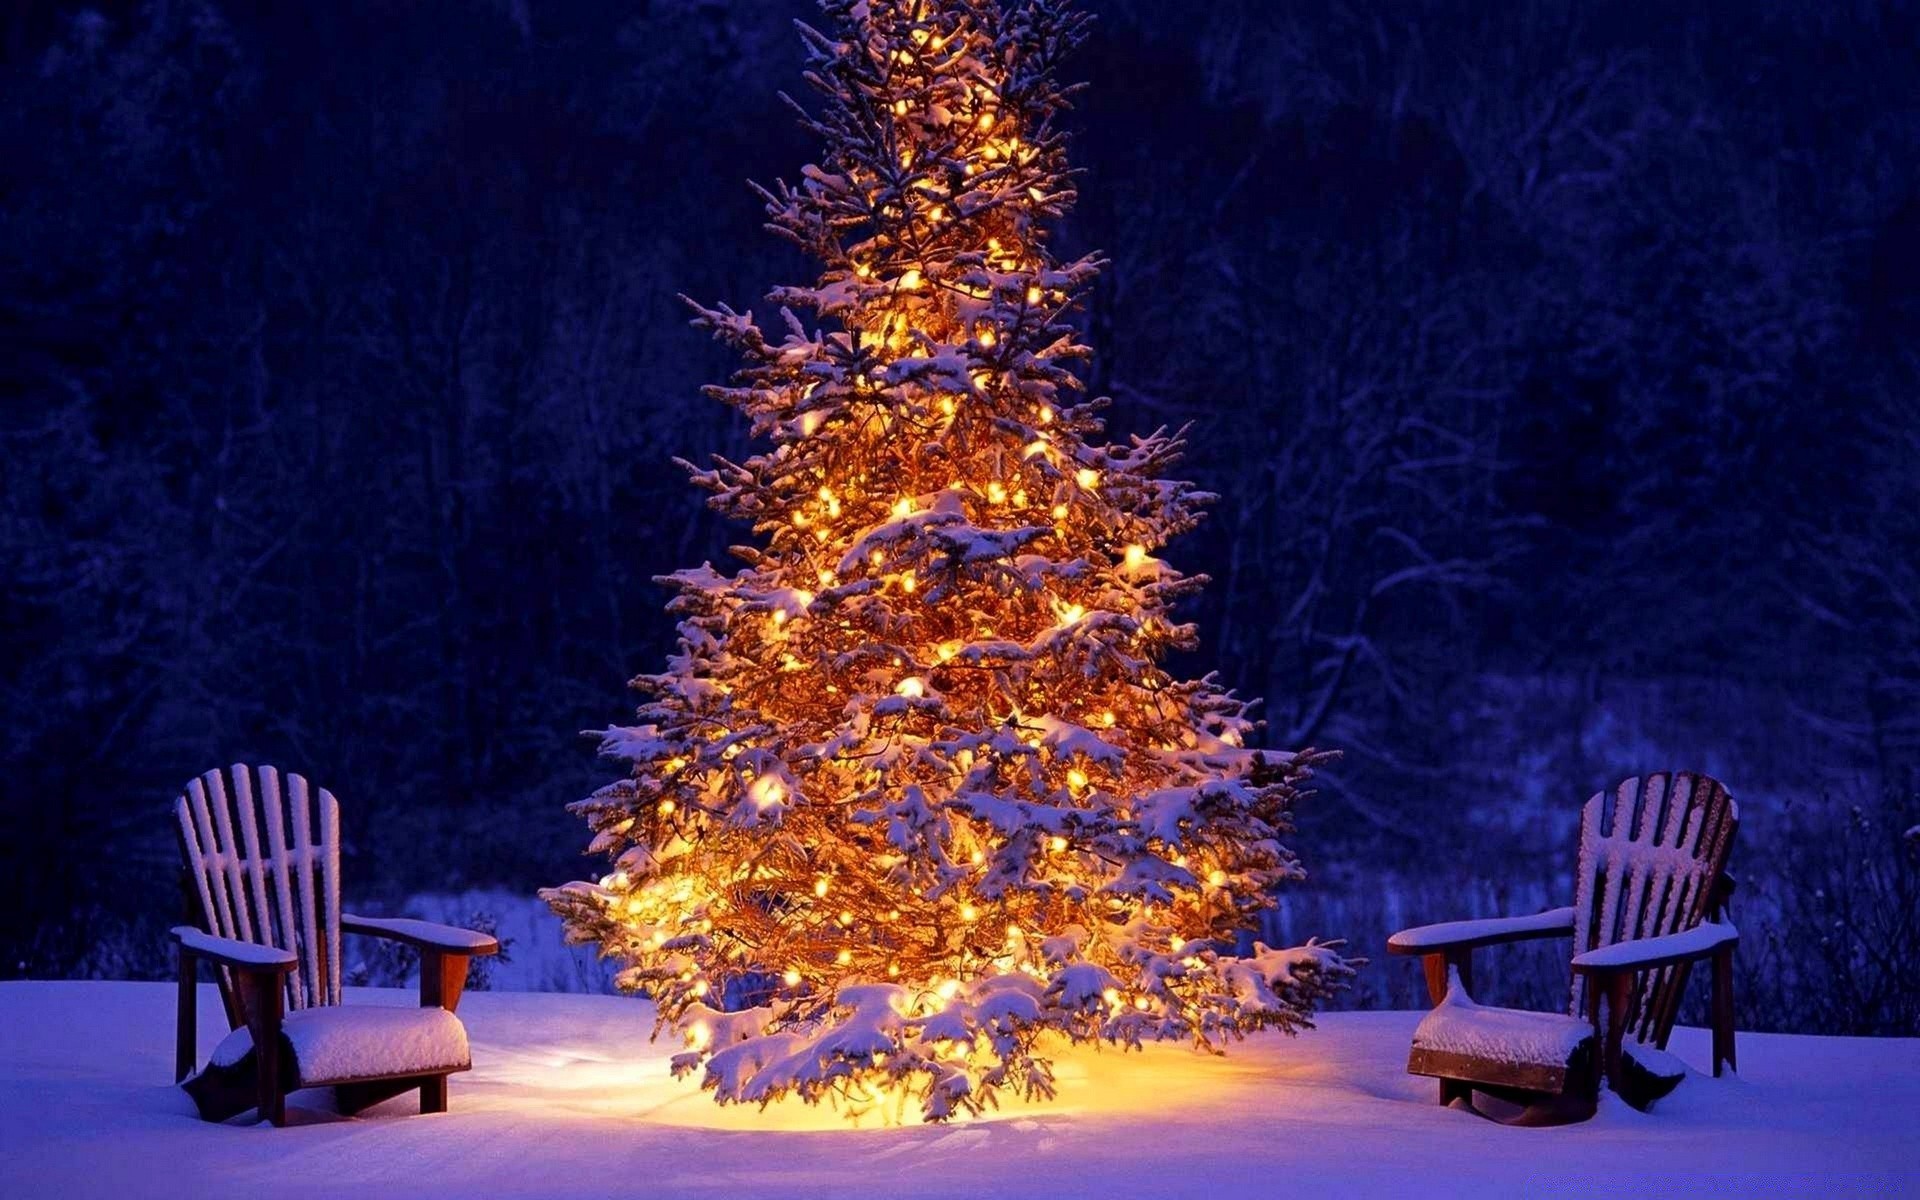 рождество стул скамейка место древесины на открытом воздухе зима дерево вечером снег путешествия релаксация